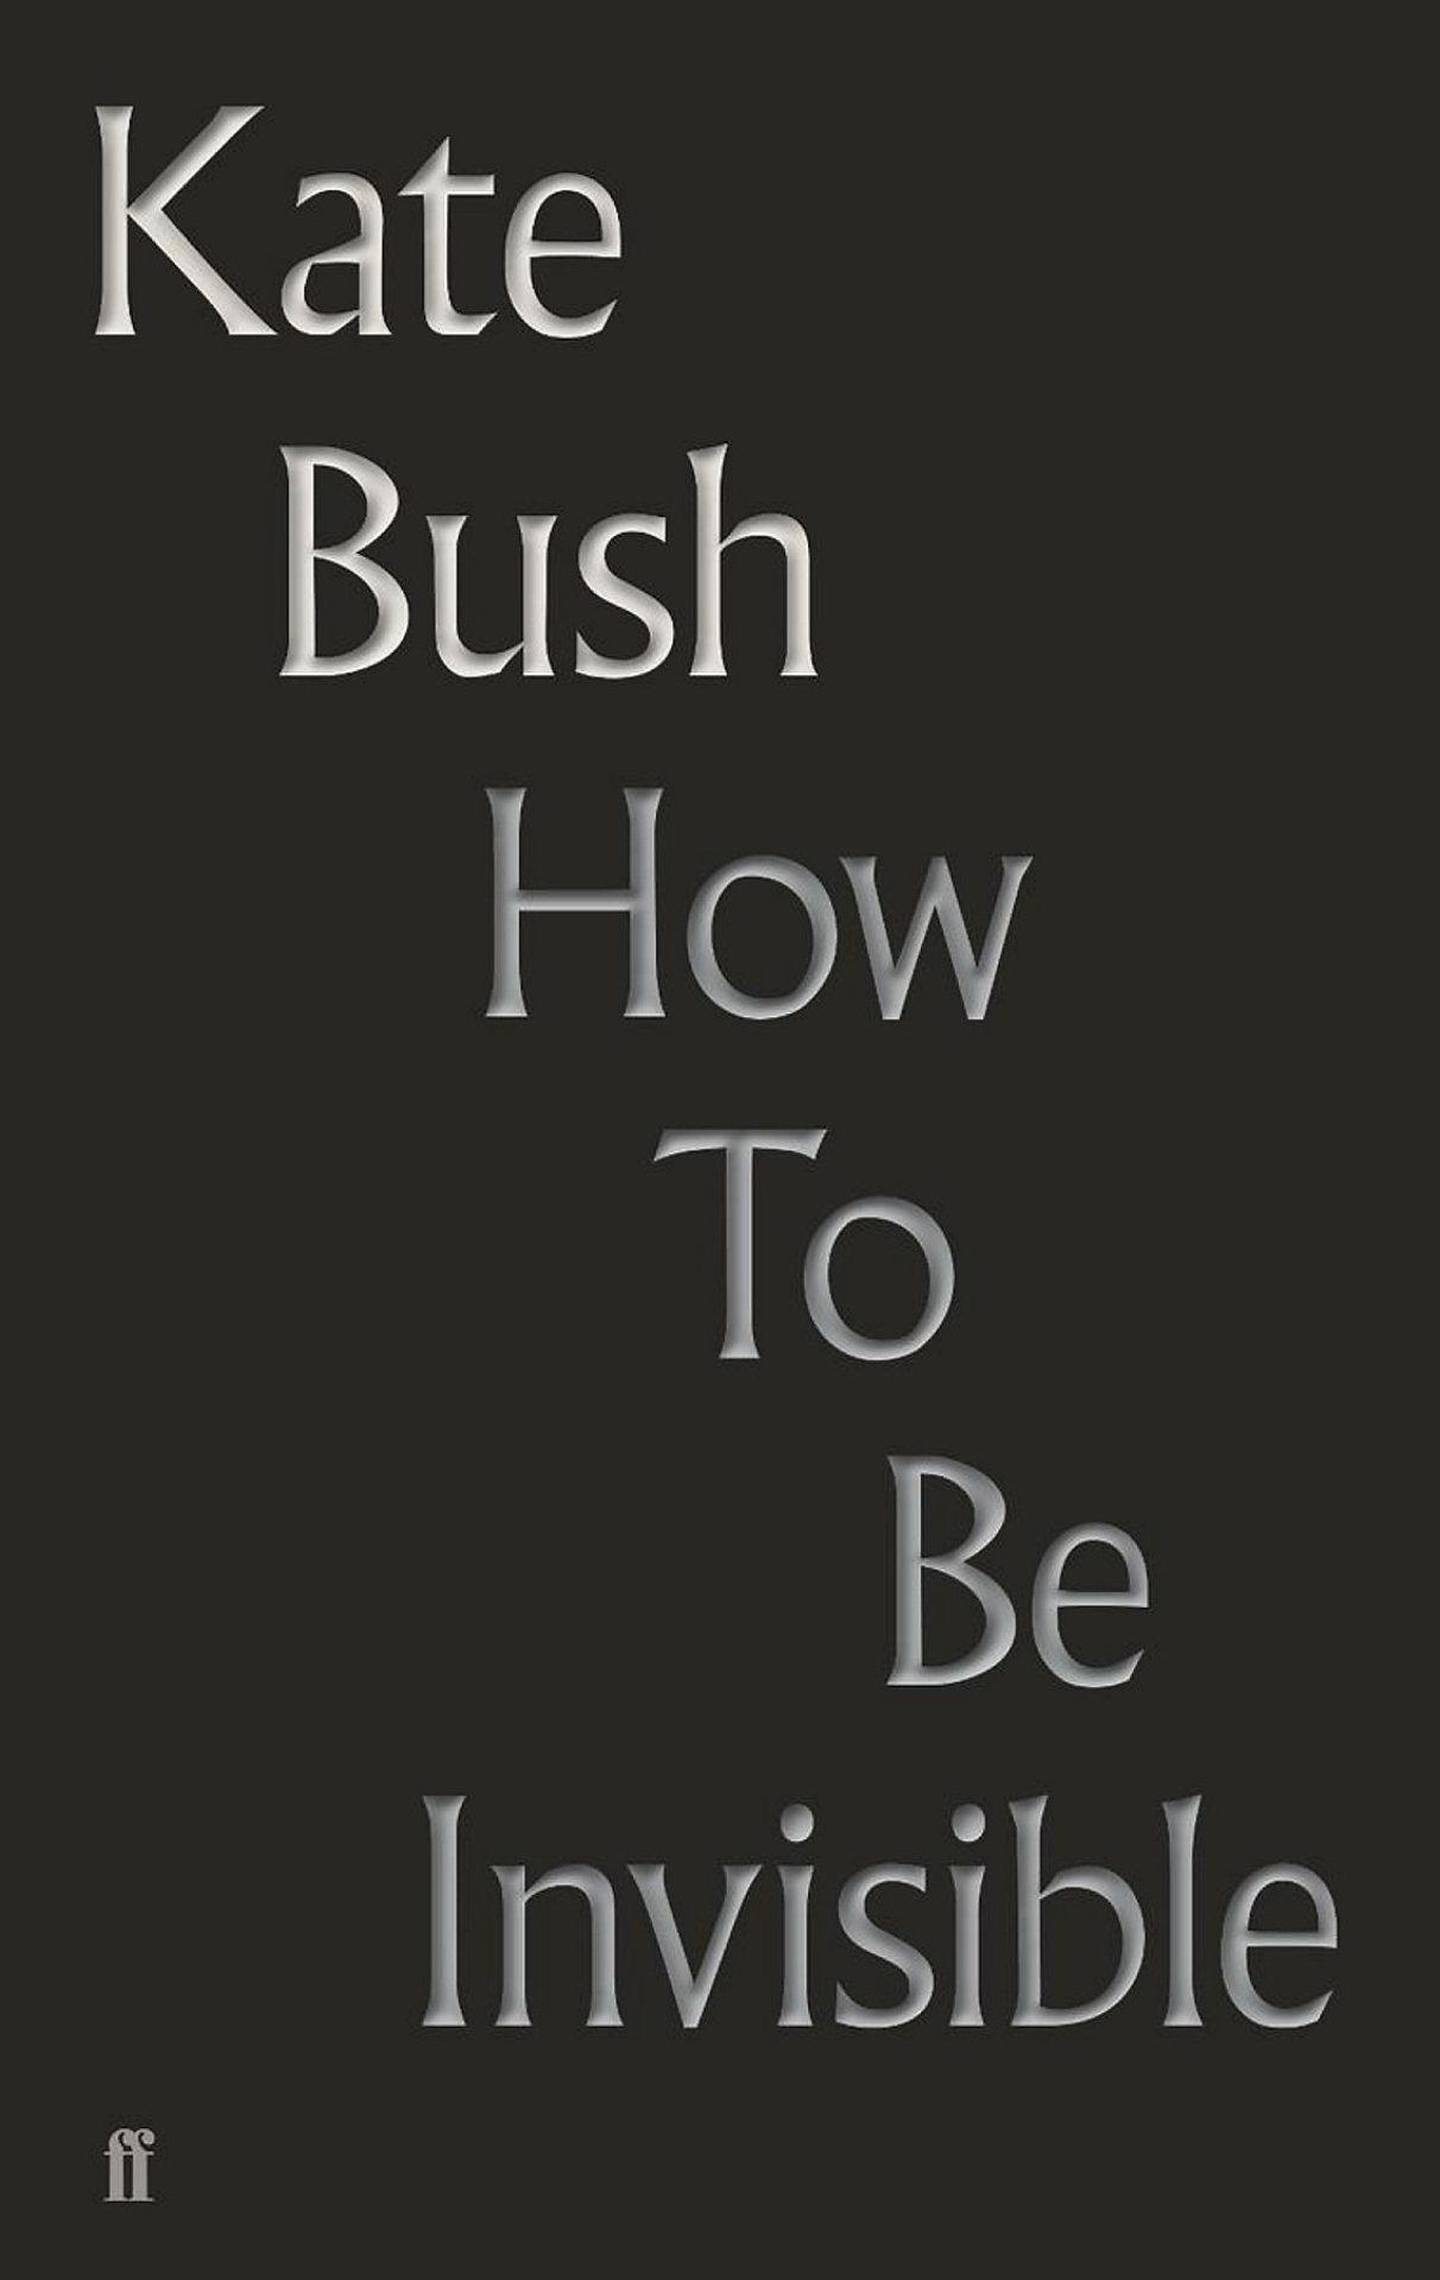 Kate Bush,KUL Anm Musikk B:«Remastered Part 1/2»
KUL Anm Musikk C:Fish People/WARNER,Kate Bush,KUL Anm Musikk B:«How To Be Invisible»
KUL Anm Musikk C:Faber & Faber